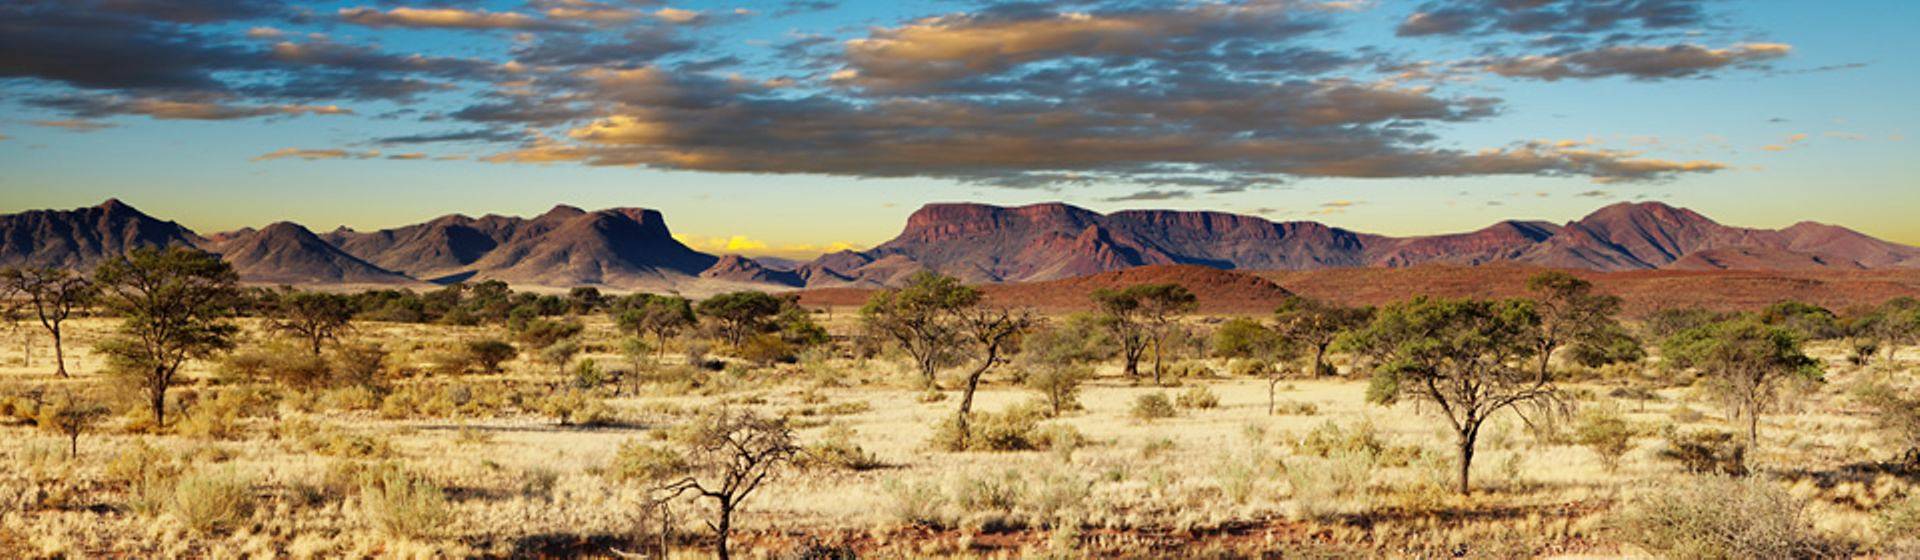 Holidays to Namibia Image